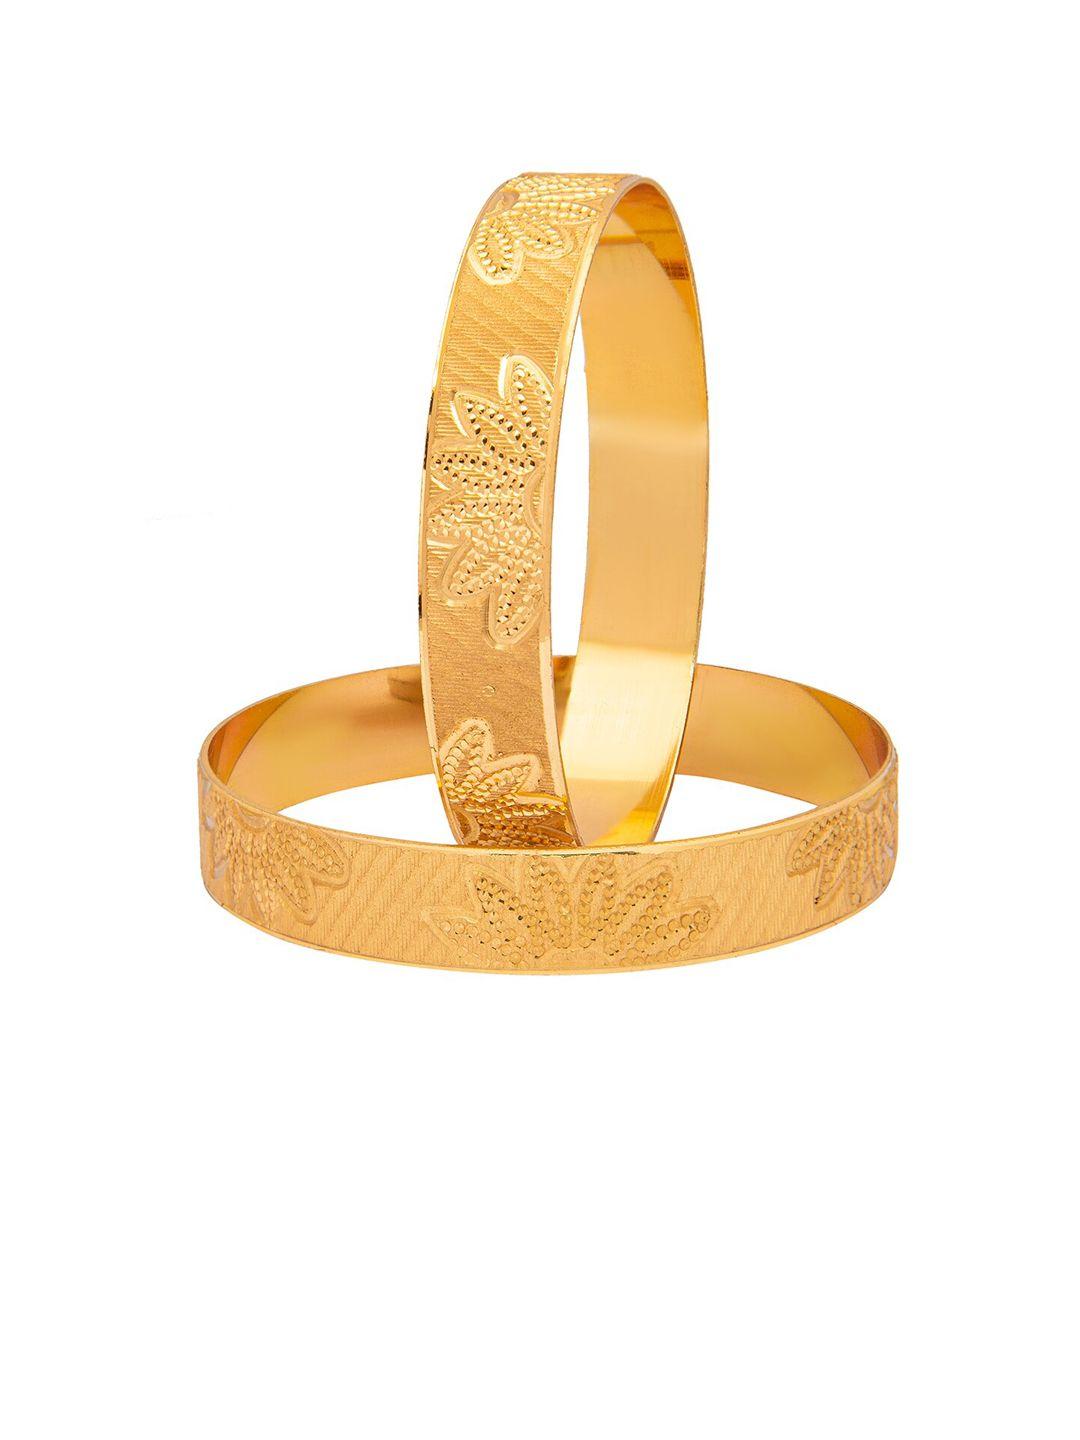 shining-jewel---by-shivansh-set-of-2-gold-plated-bangle